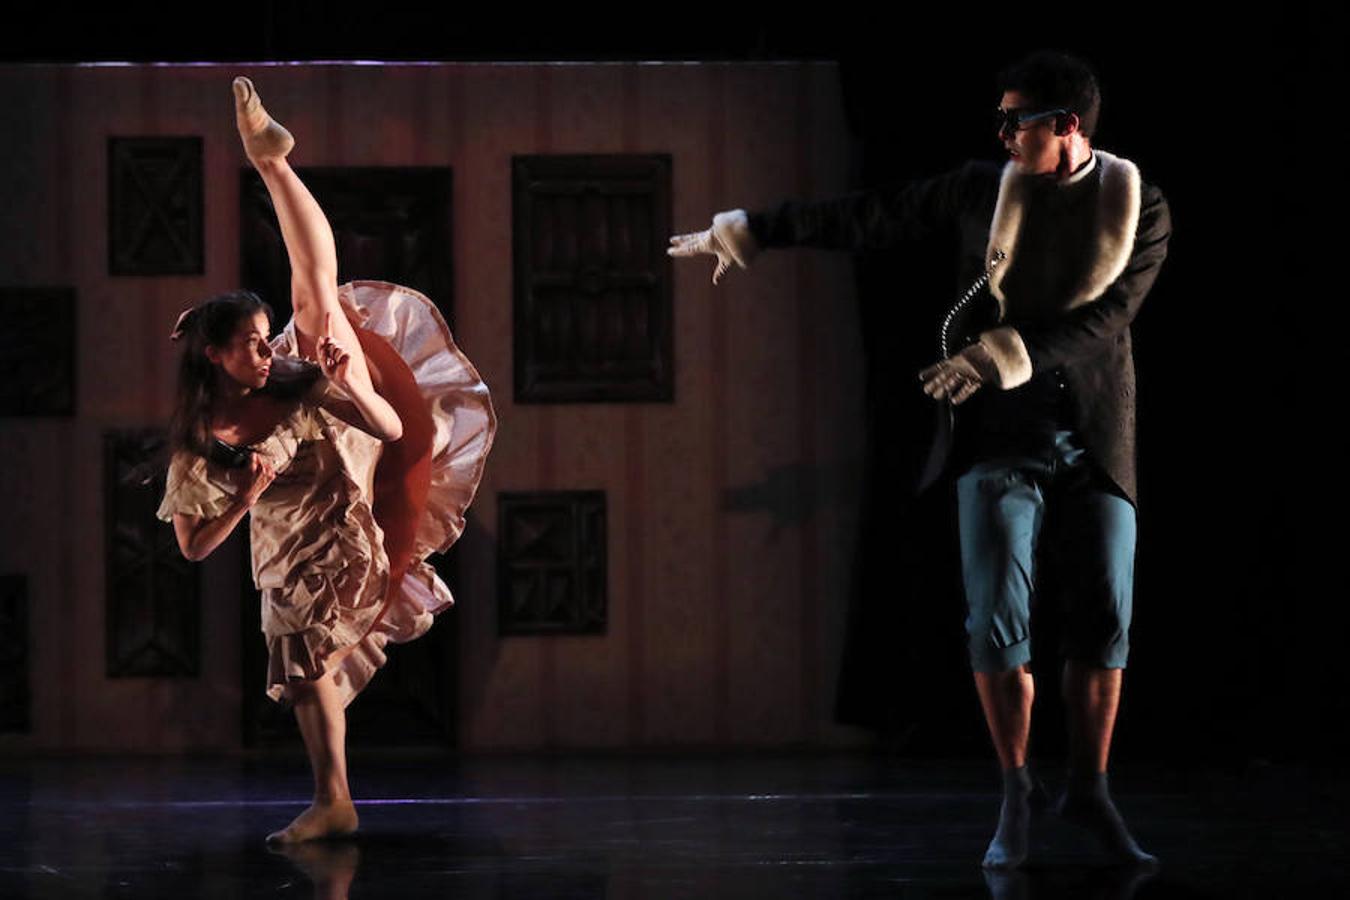 La obra de danza 'Alicia' se ha presentado este miércoles en Santiago, Chile. A sido Mathieu Guilhaumon, coreógrafo y director artístico del Ballet Nacional Chileno, quien ha ideado esta obra inspirada en el famoso cuento de Lewis Carroll, 'Alicia en el País de Maravillas'. 